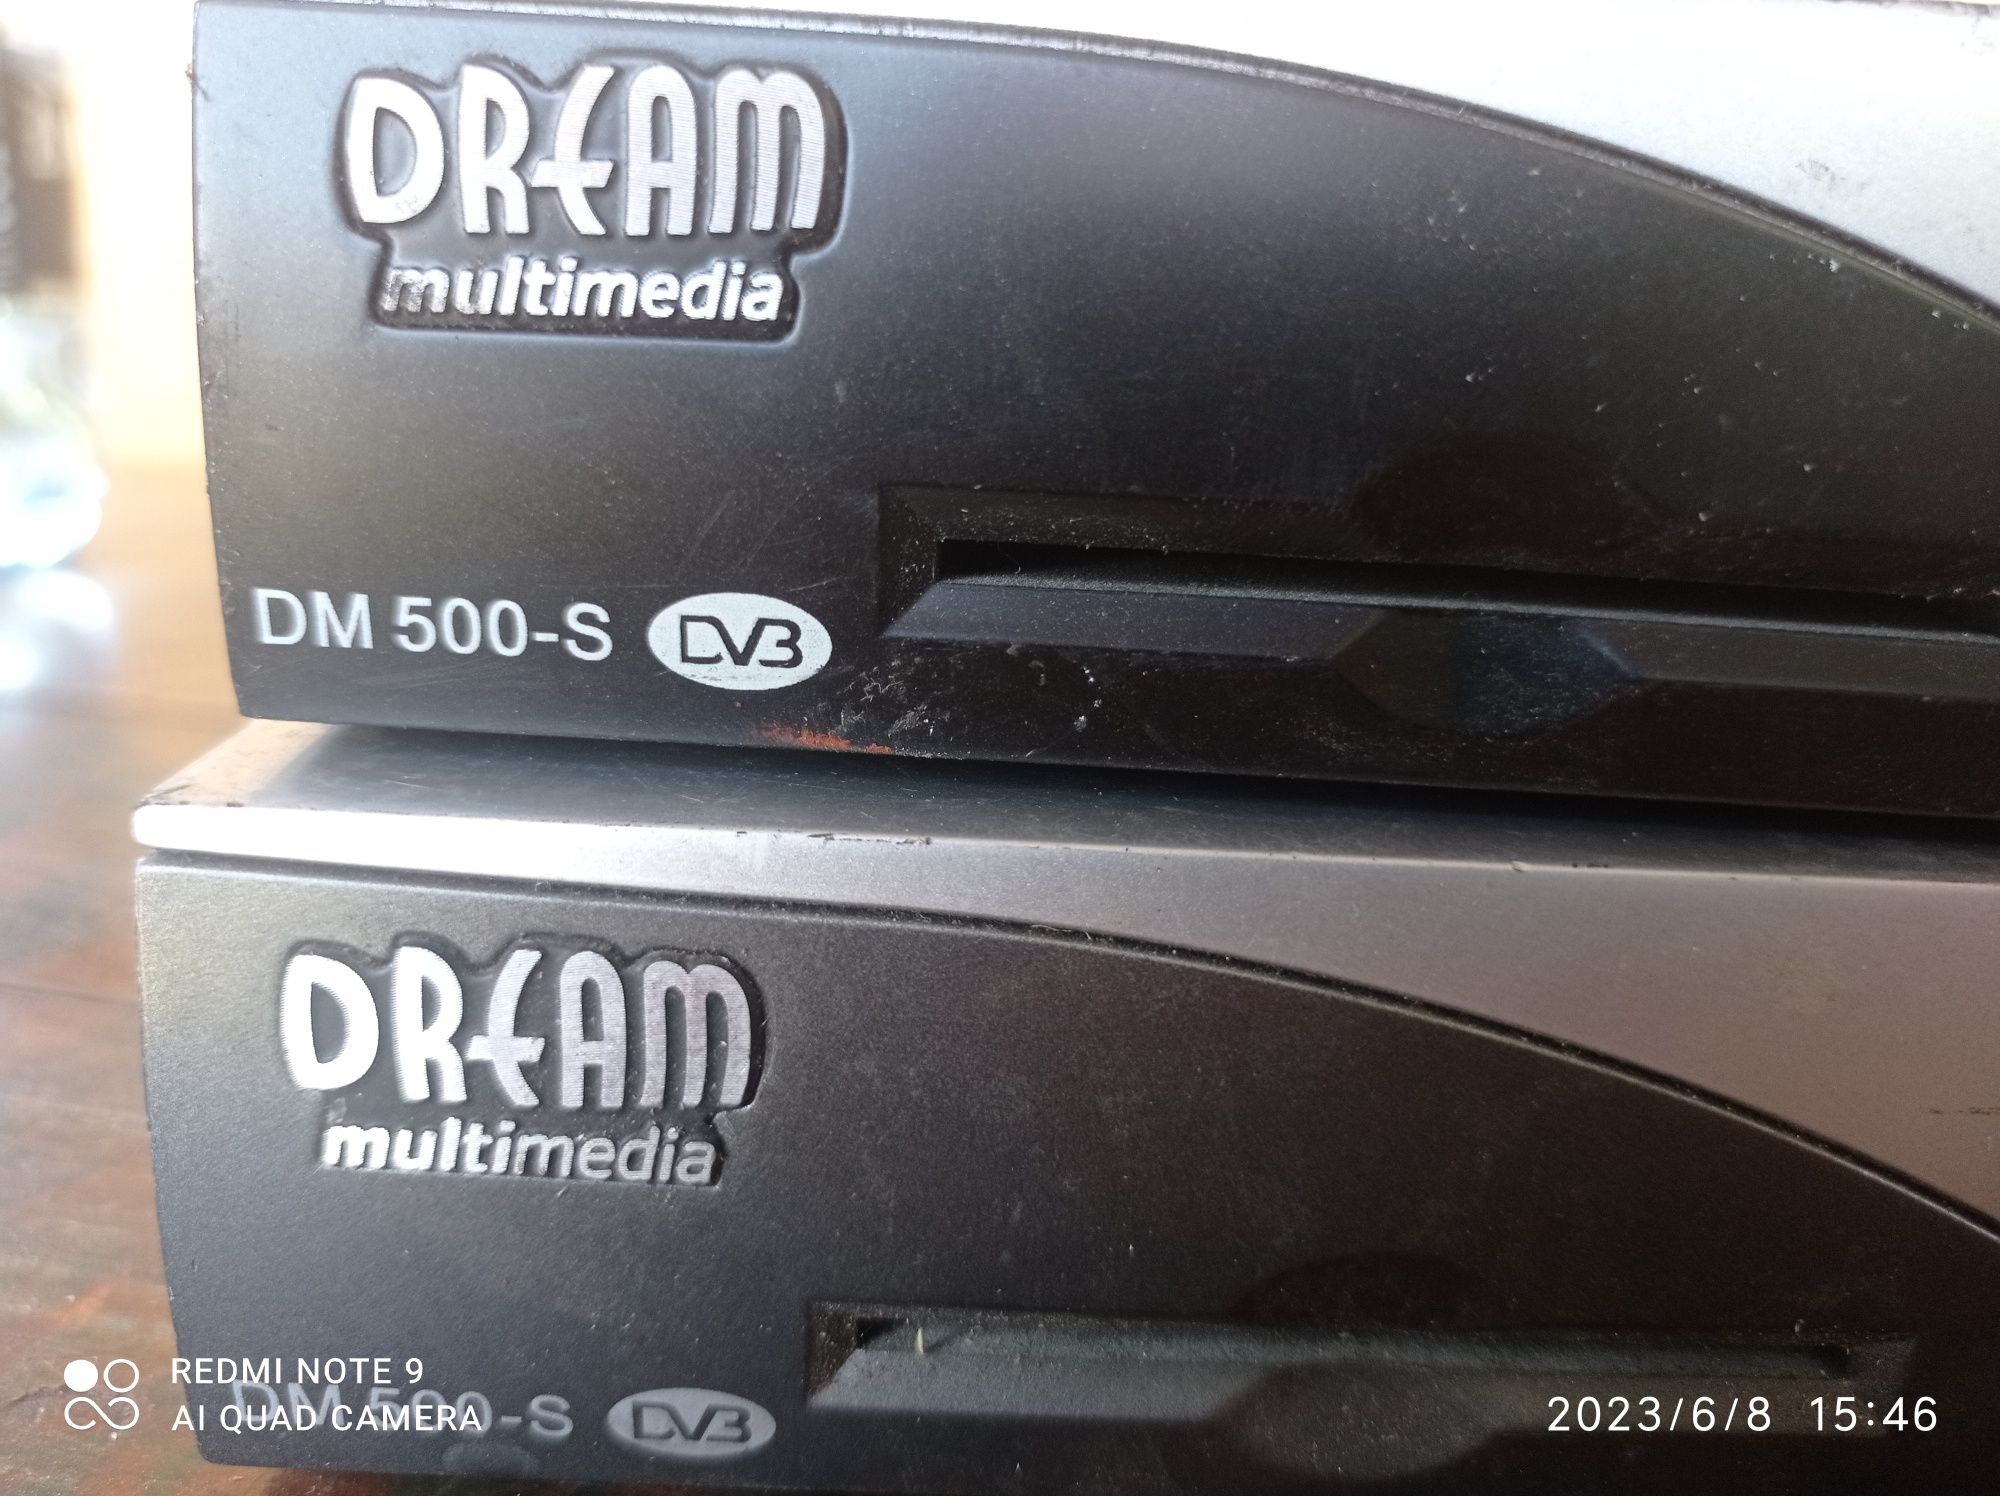 Drema multimedia dm 500-s dv3